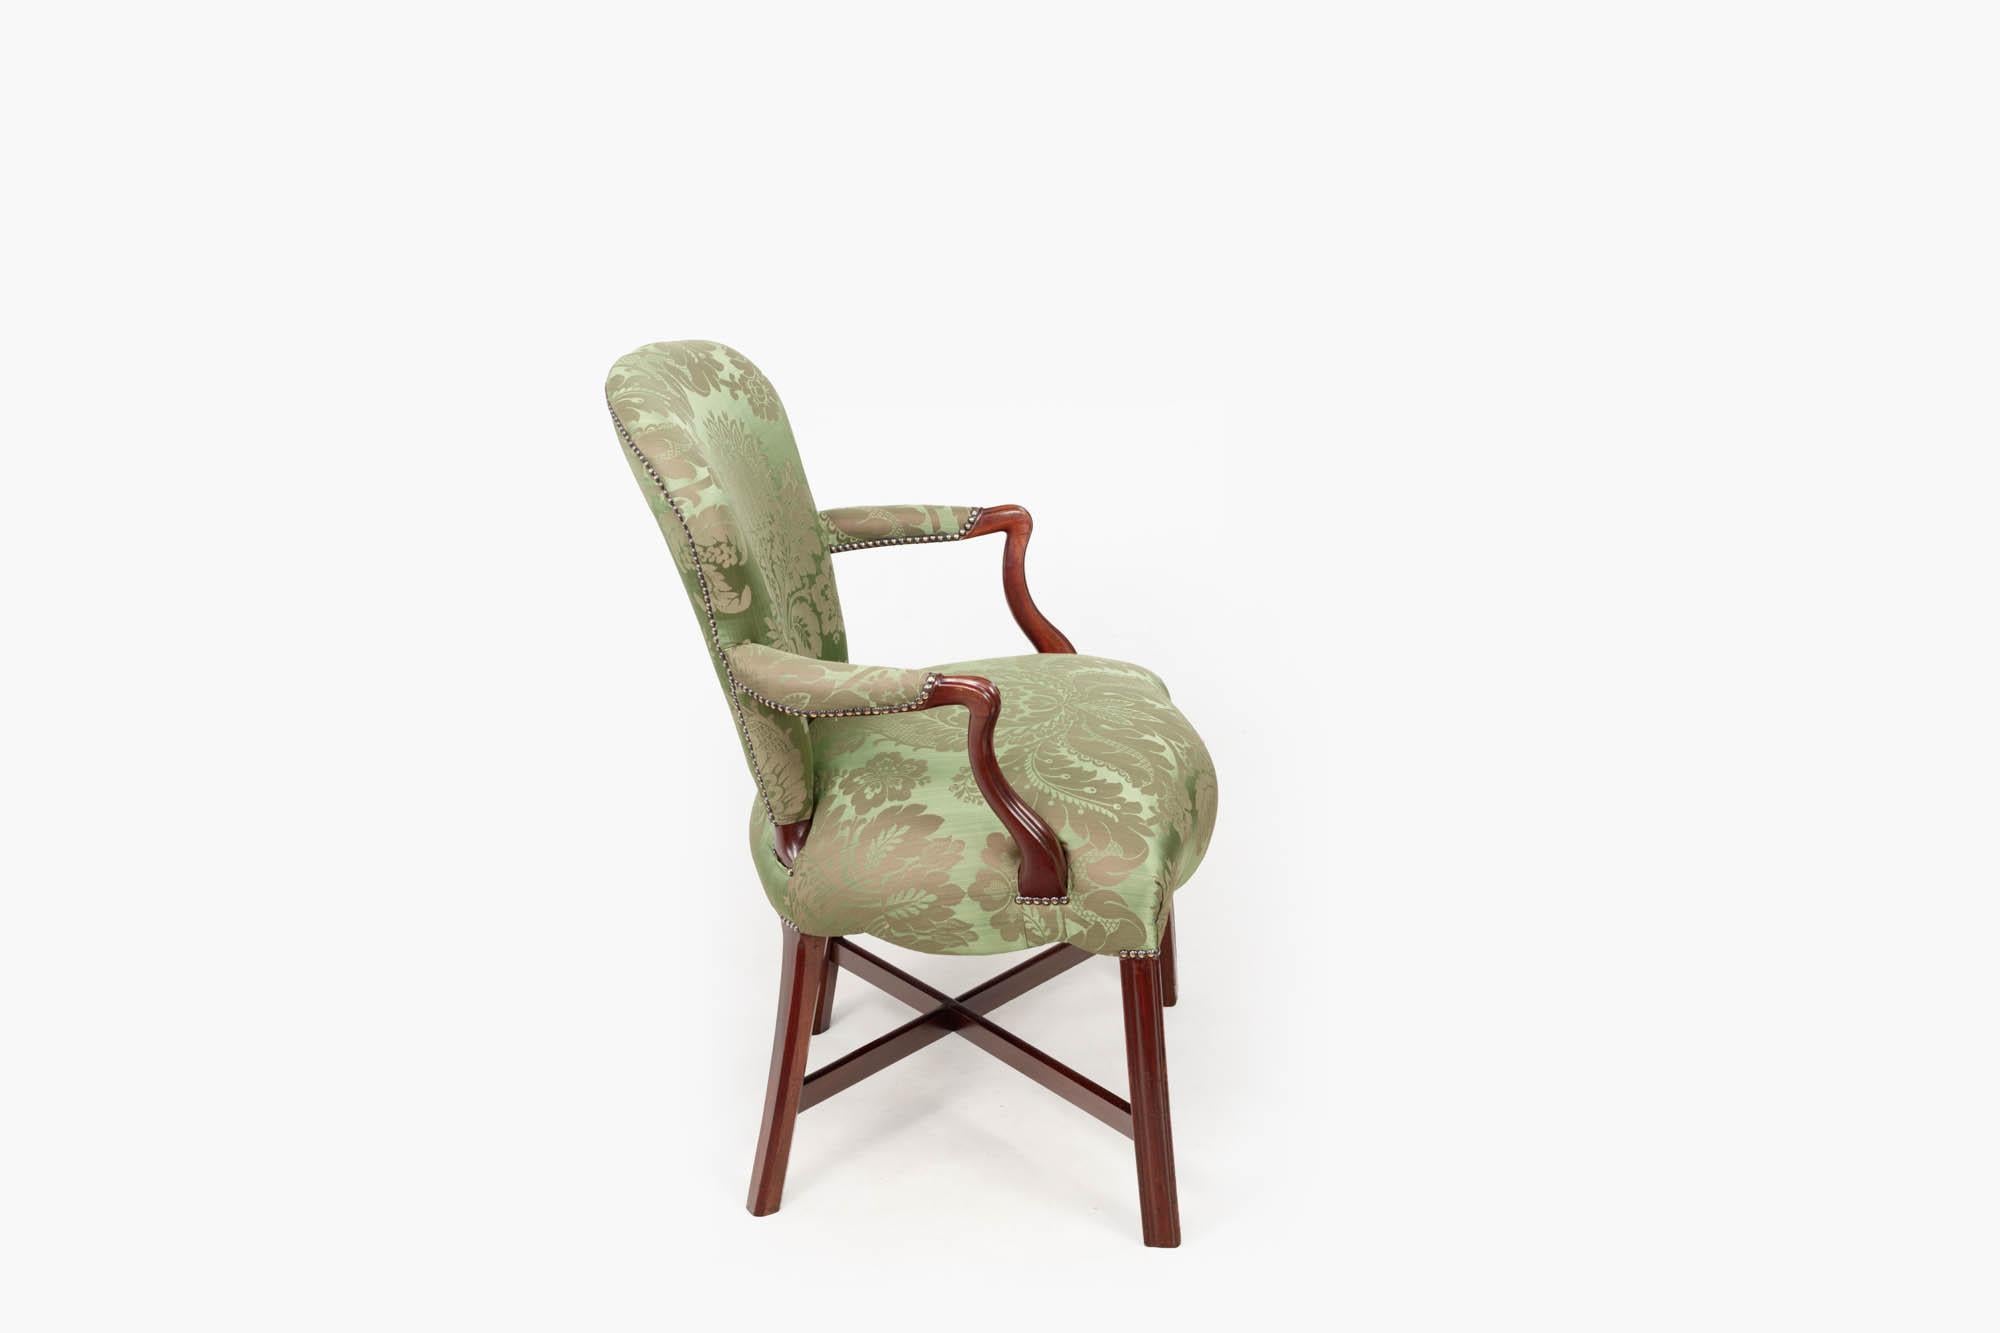 Paire de fauteuils anglais Hepplewhite du XVIIIe siècle, avec une fine tapisserie en damas vert clouté. La paire présente des sièges avant en forme de serpentin terminés par de simples pieds cannelés soutenus par des brancards en forme de X